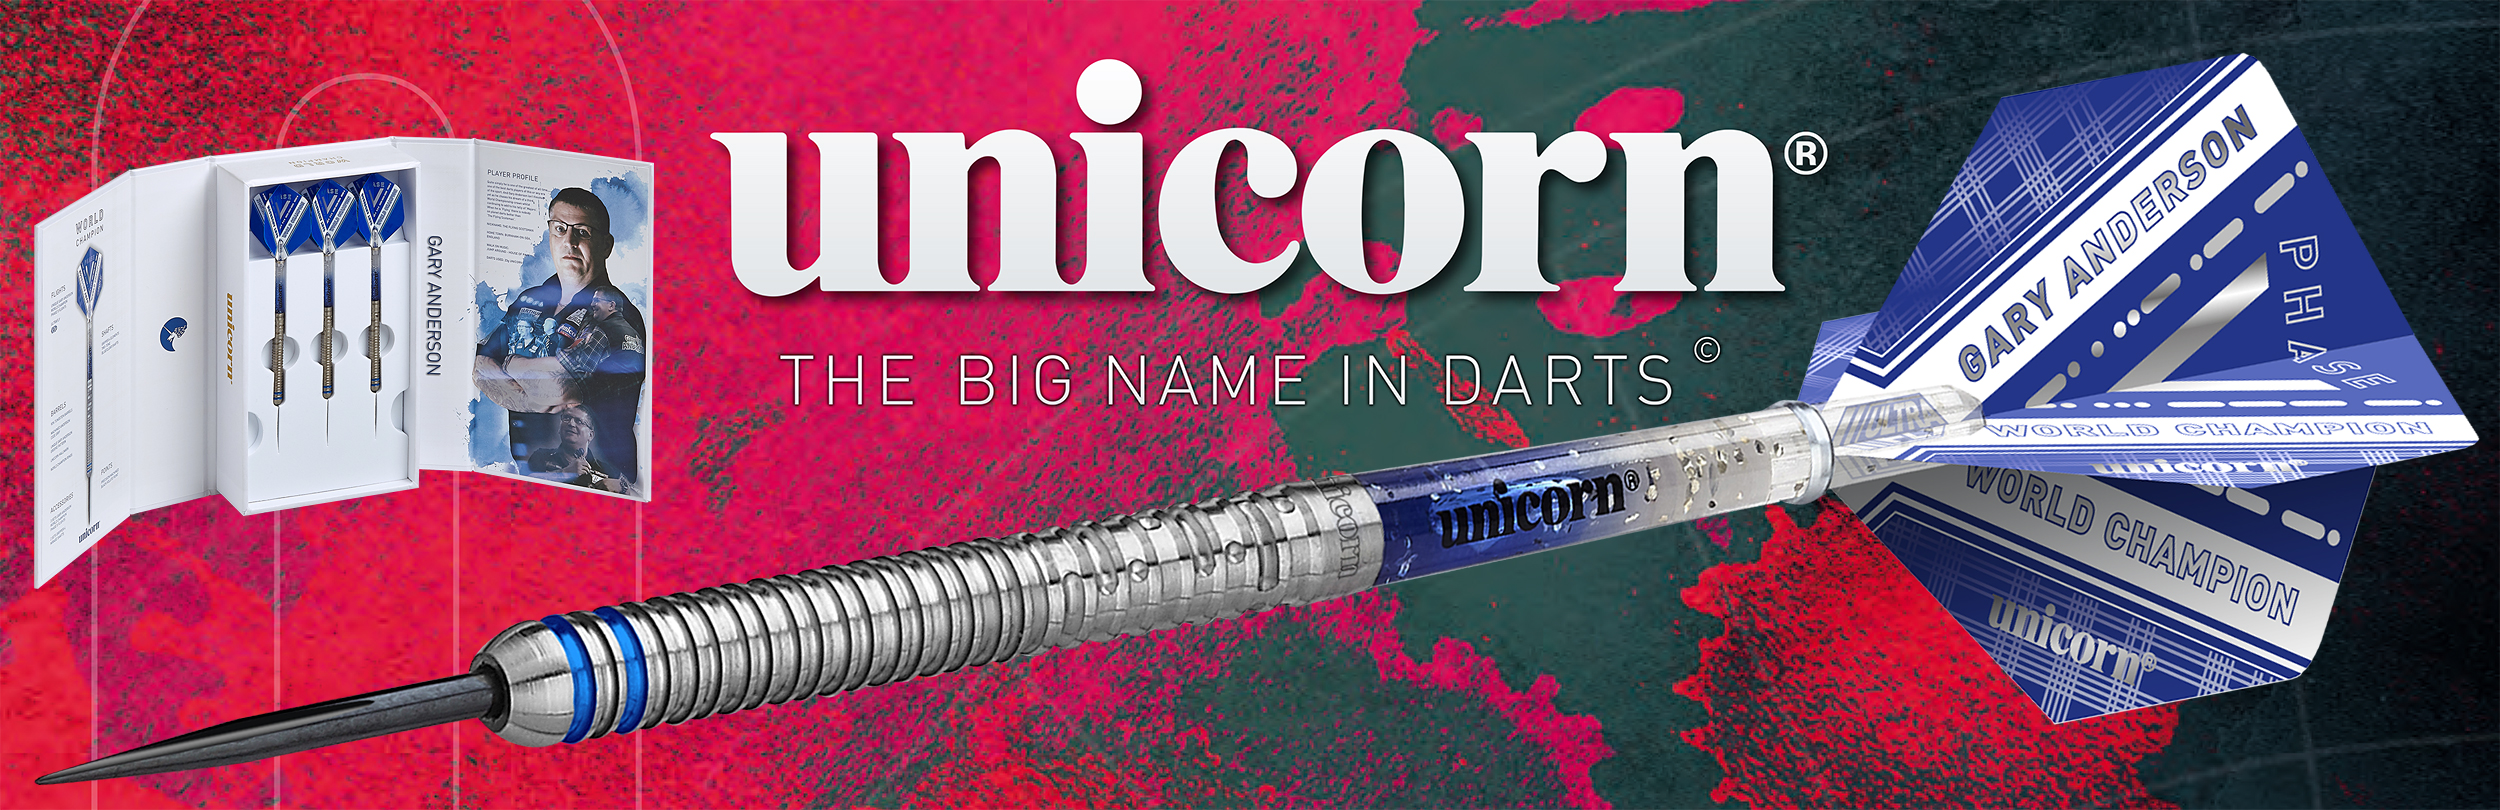 unicorn Dart-News Launch 2021 am 15.12.2020 unicorn Dart Neuheiten 2020 / 2021 - Neue unicorn Darts Maestro & Code Darts Dimitri Van den Bergh Dreammaker